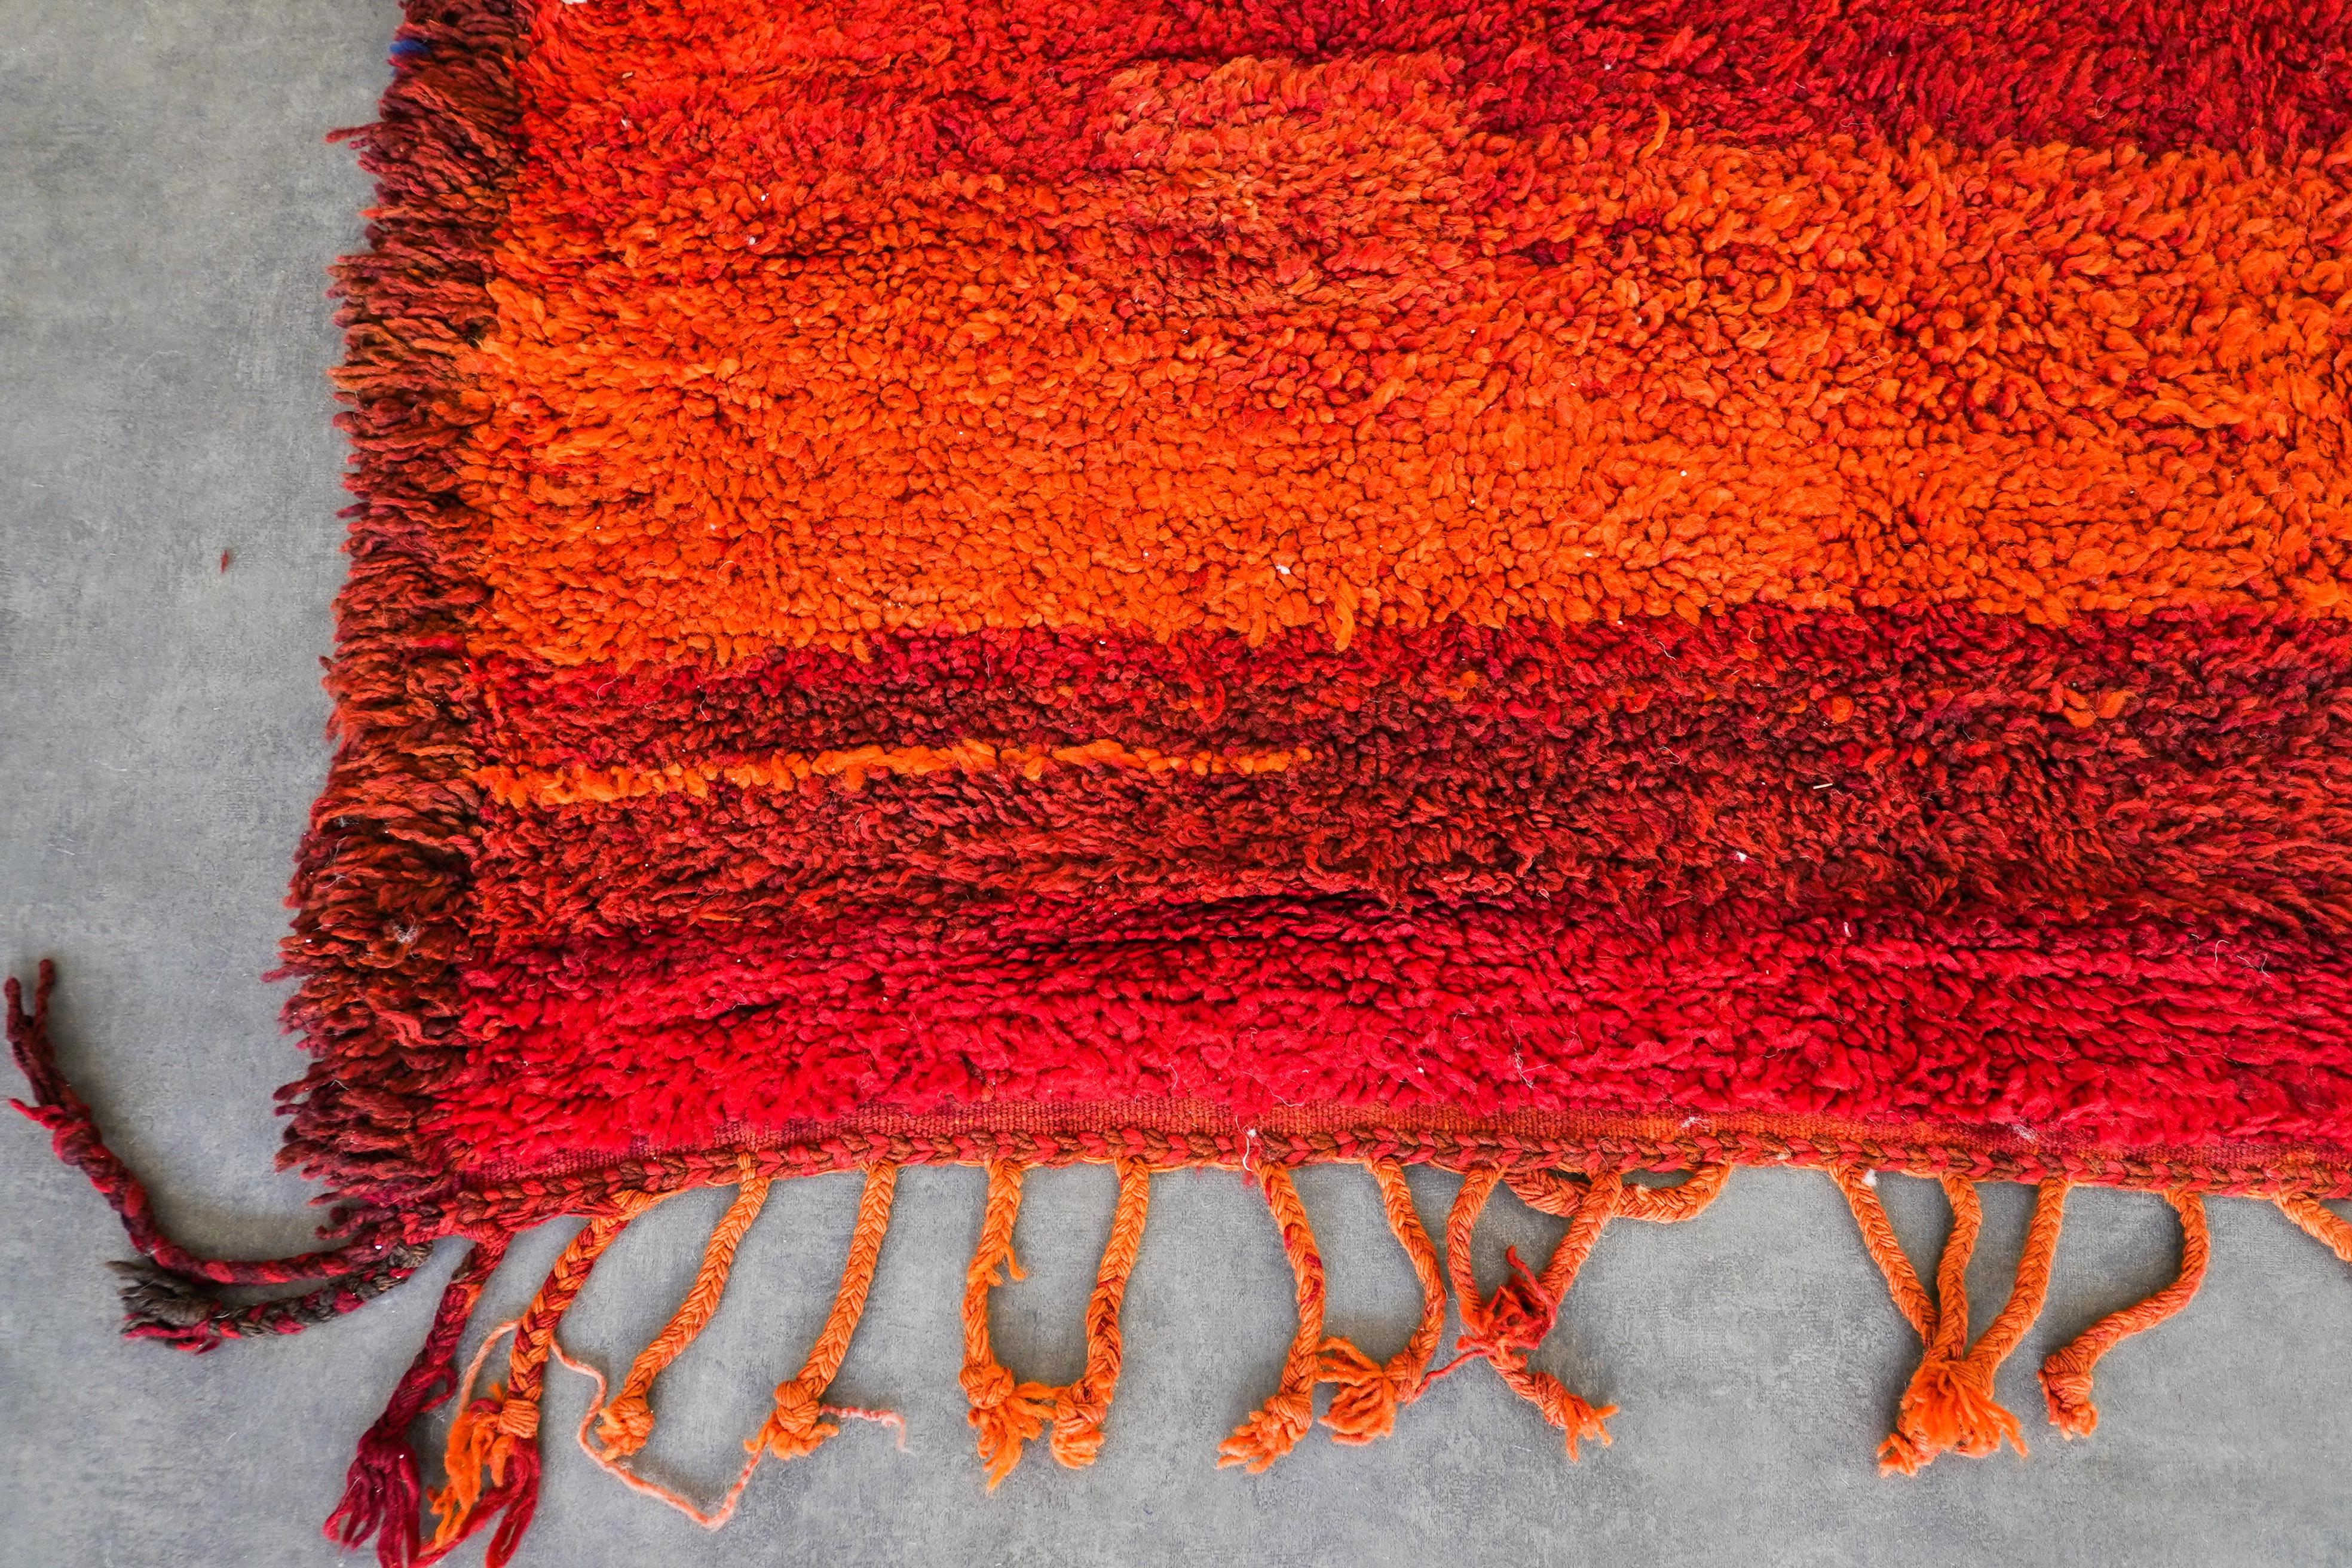 Découvrez le riche héritage tissé dans notre tapis marocain rouge vintage. Fabriqué à la main par des artisans qualifiés selon des techniques éprouvées, chaque tapis berbère est un récit unique qui fait écho à la tapisserie culturelle du Maroc. Avec